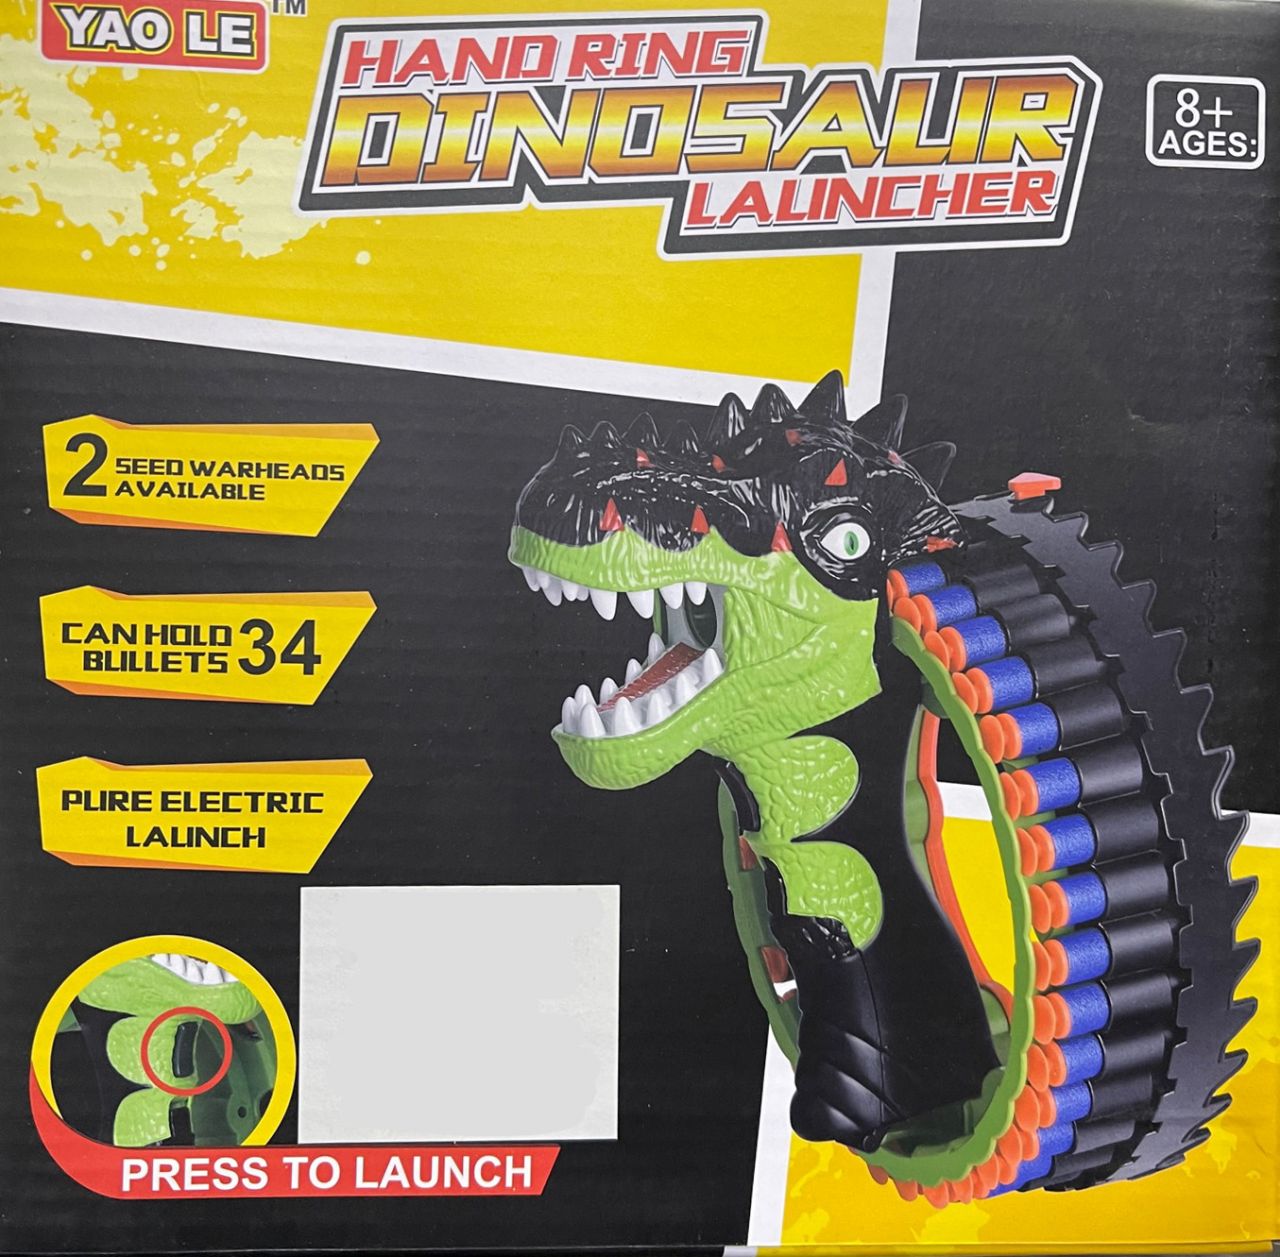 Műanyag Pisztoly Hand Ring Dinosaur Launcher - No.2028 - Gyerek játék